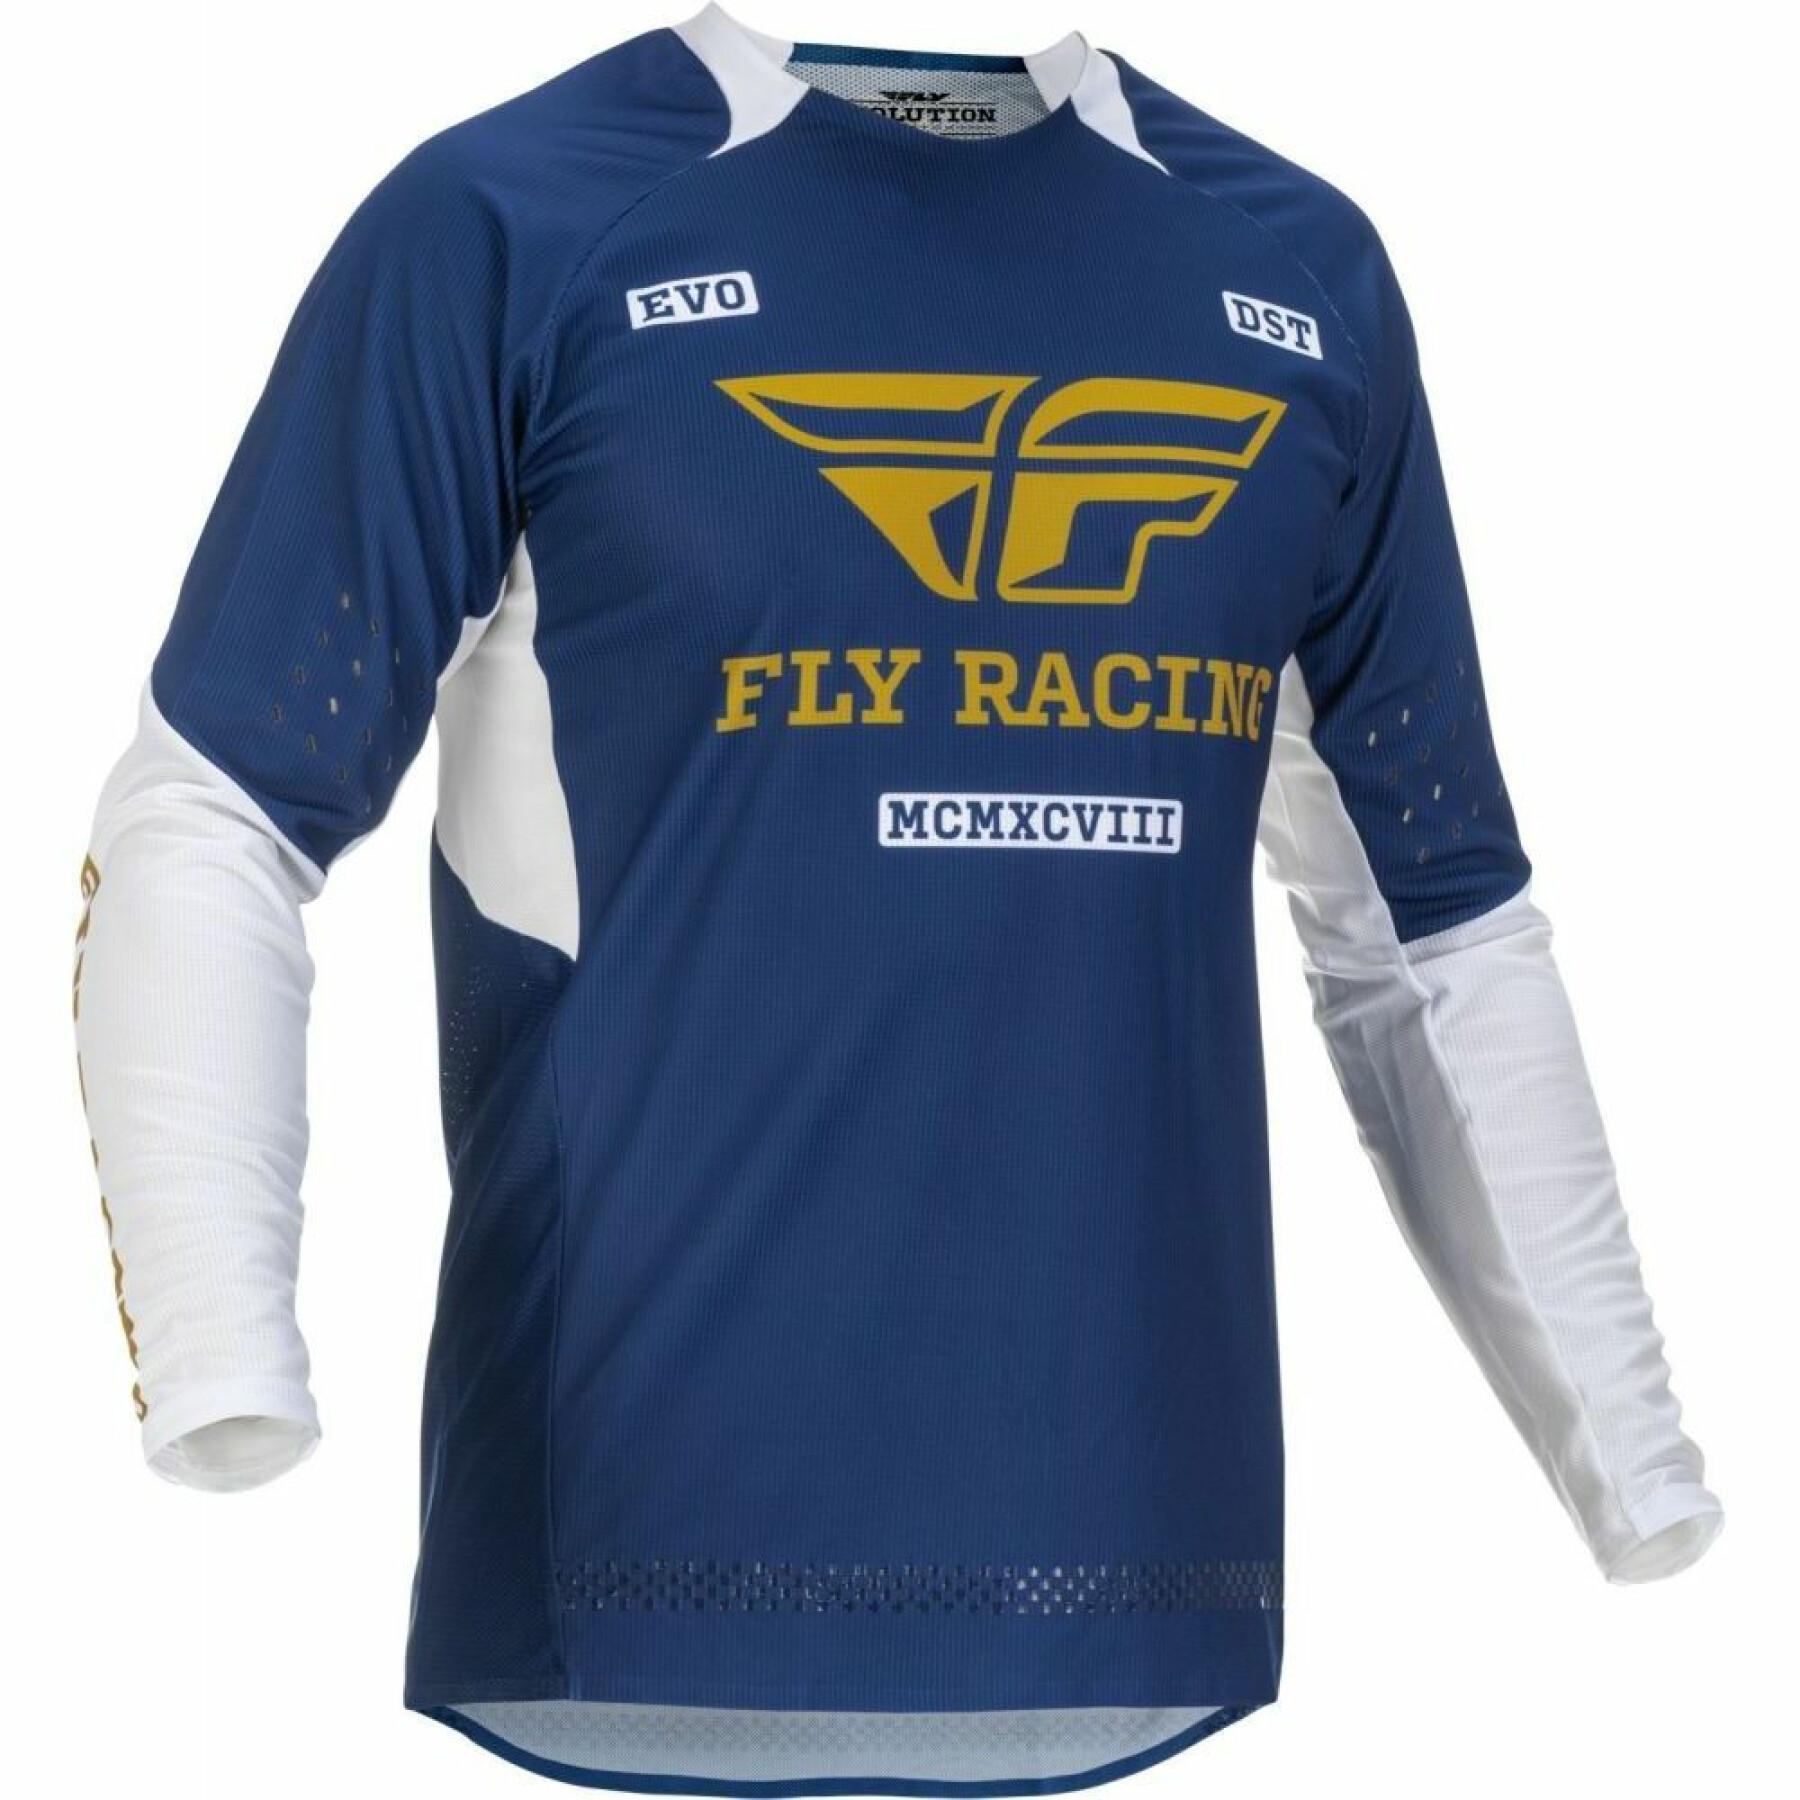 CamisetaFly Racing Evo